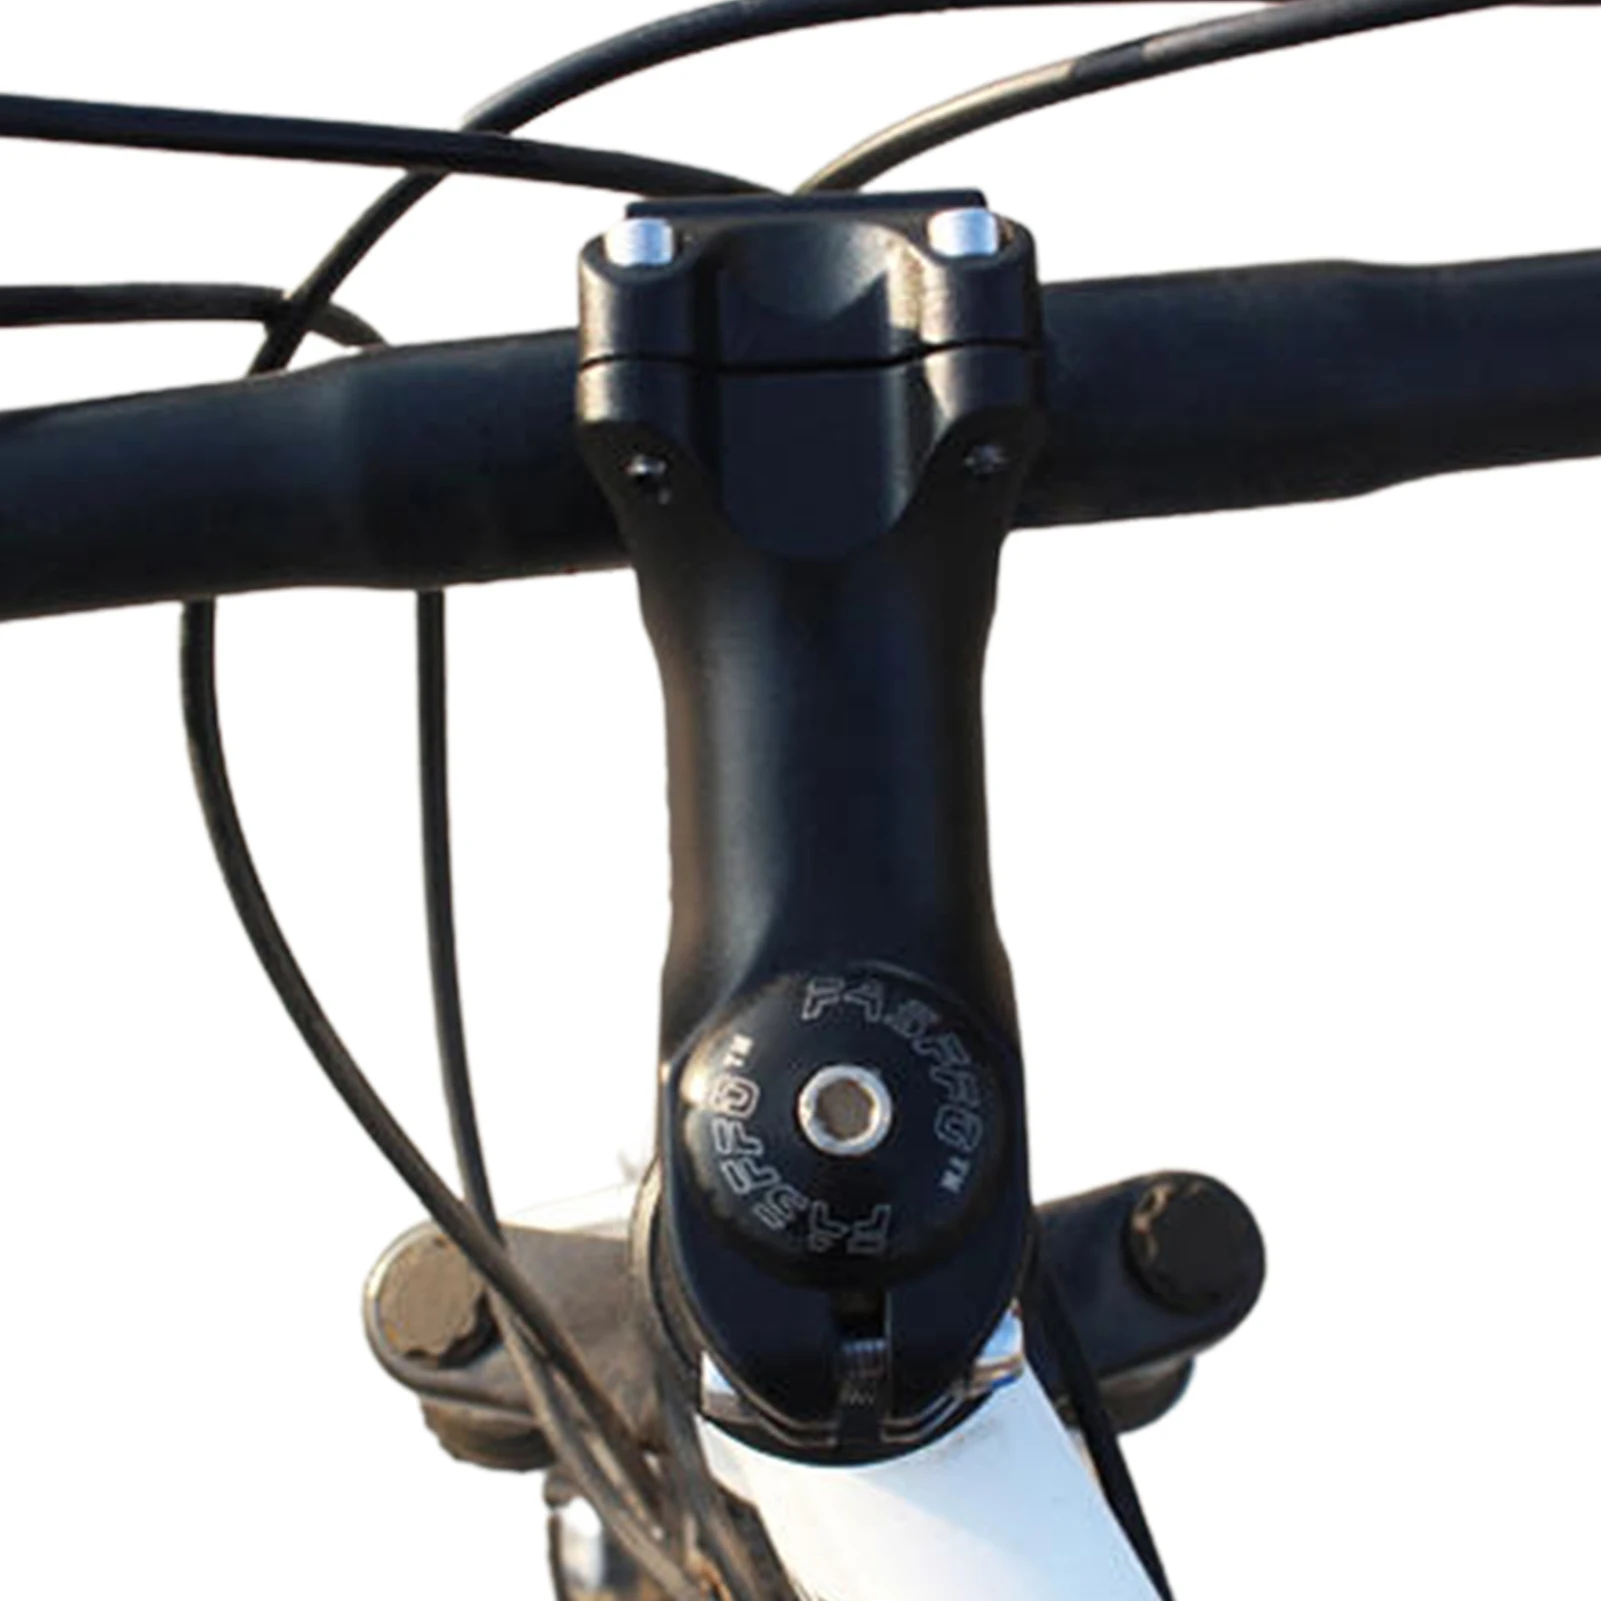 

Велосипедный стержень для руля, стержни из алюминиевого сплава для горных велосипедов, стержень руля 31,8/25,4 мм, простые в установке аксессуа...